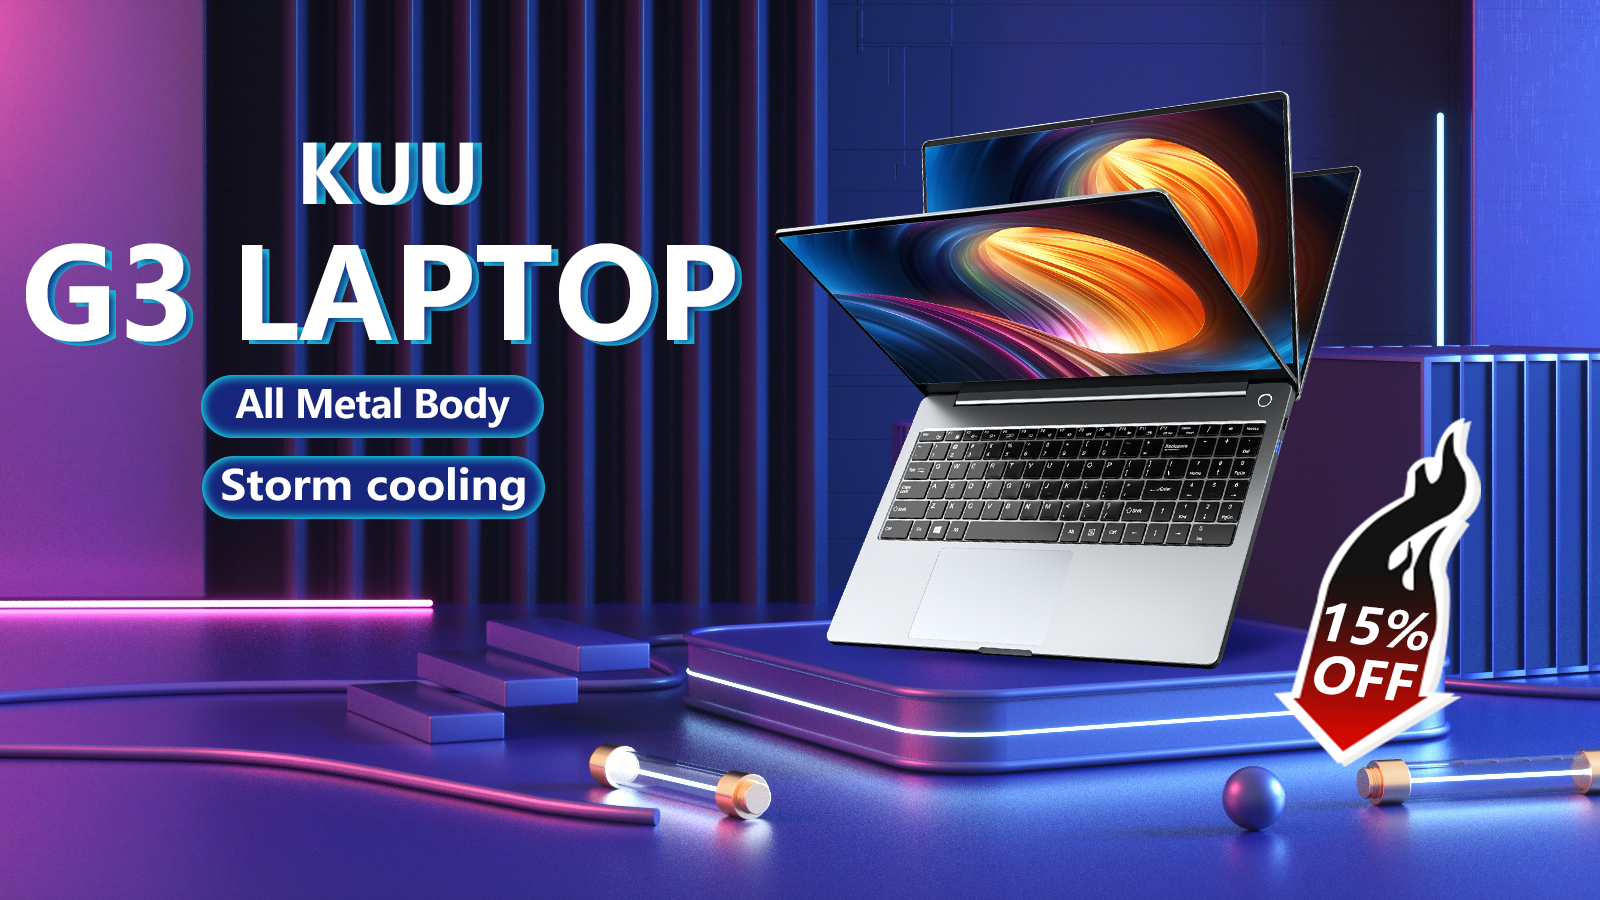 Kuu 새로운 온라인 상점 축하 최대 15% 할인 모든 제품 및 지금 G3 노트북을 사용해야 2